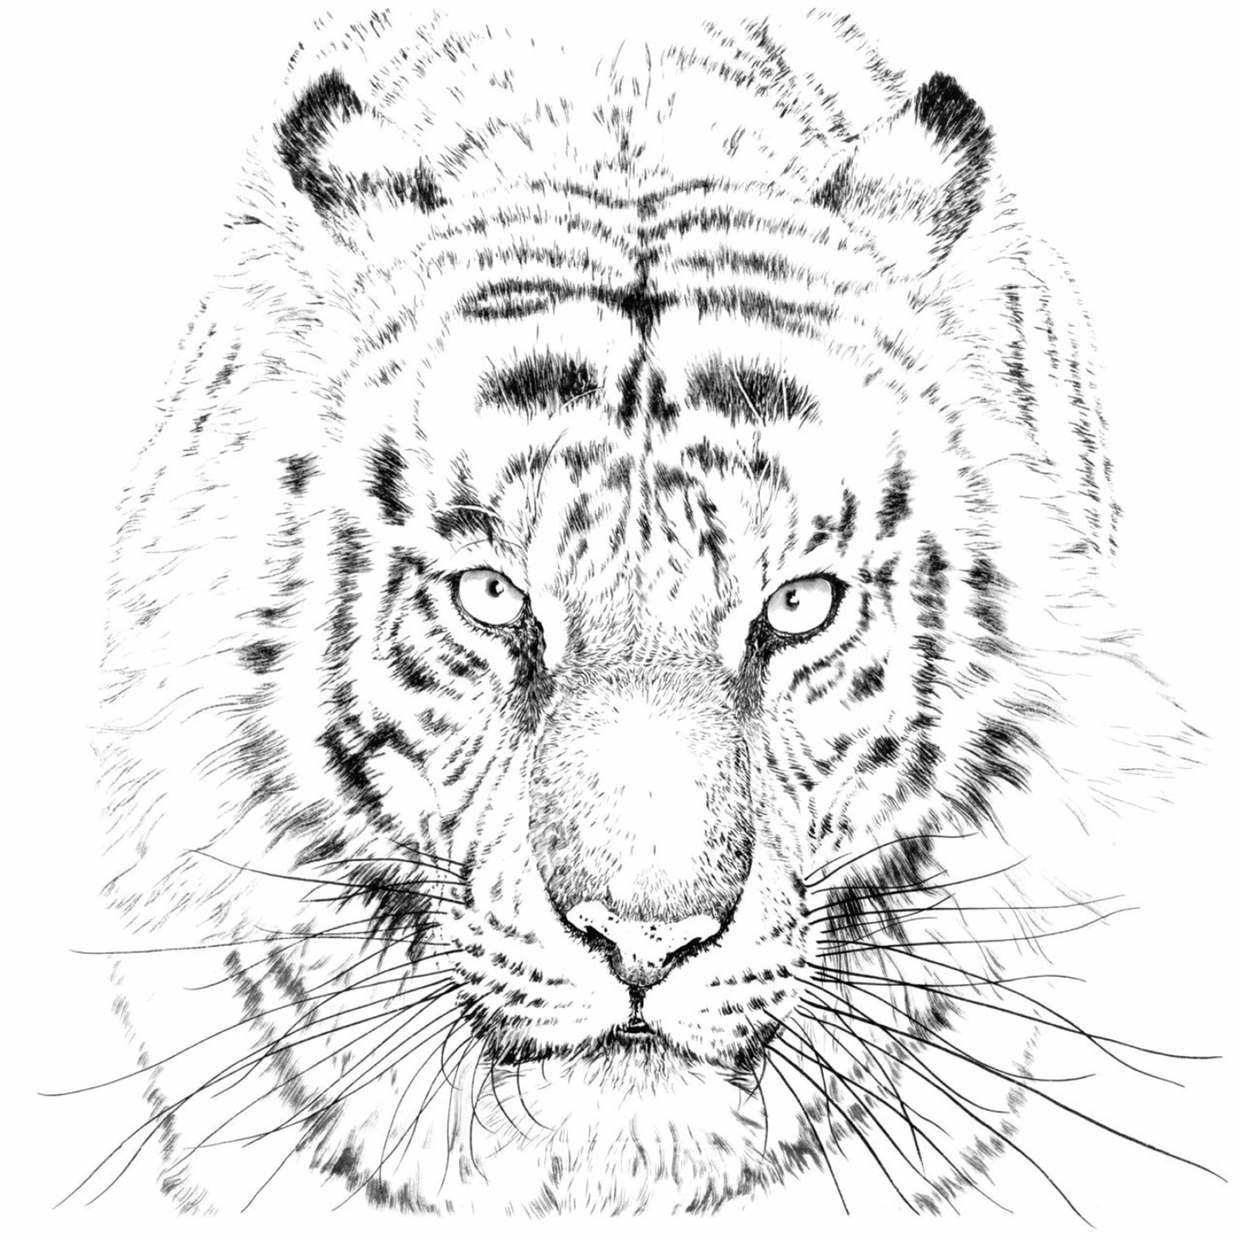 老虎的画法简单霸气图片